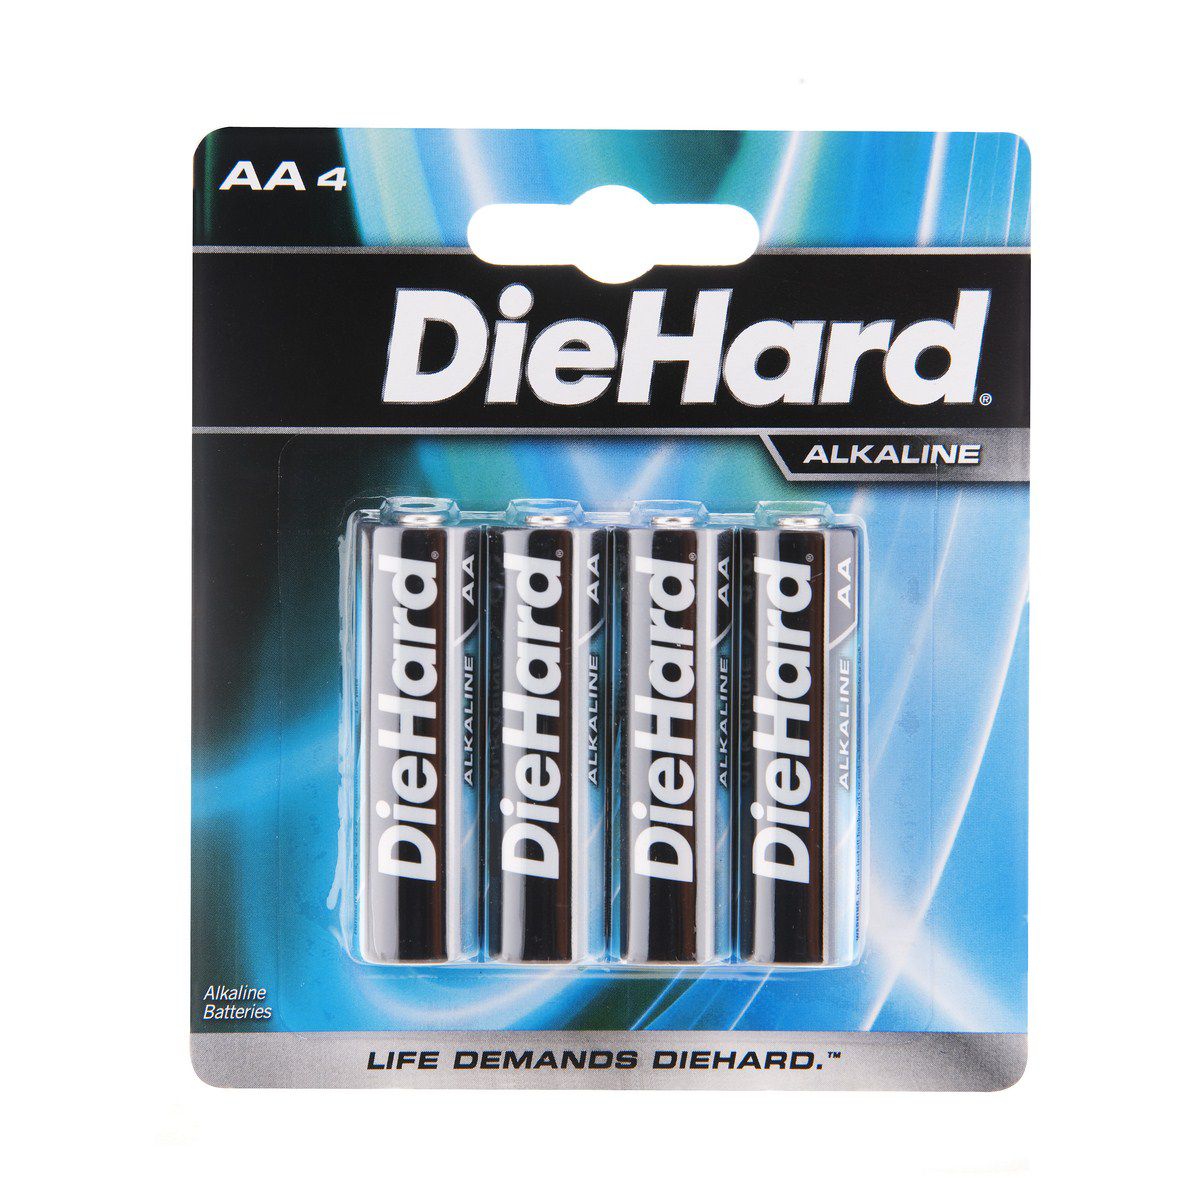 DieHard 41-1197 Alkaline Batteries (AA - 4 Pack)